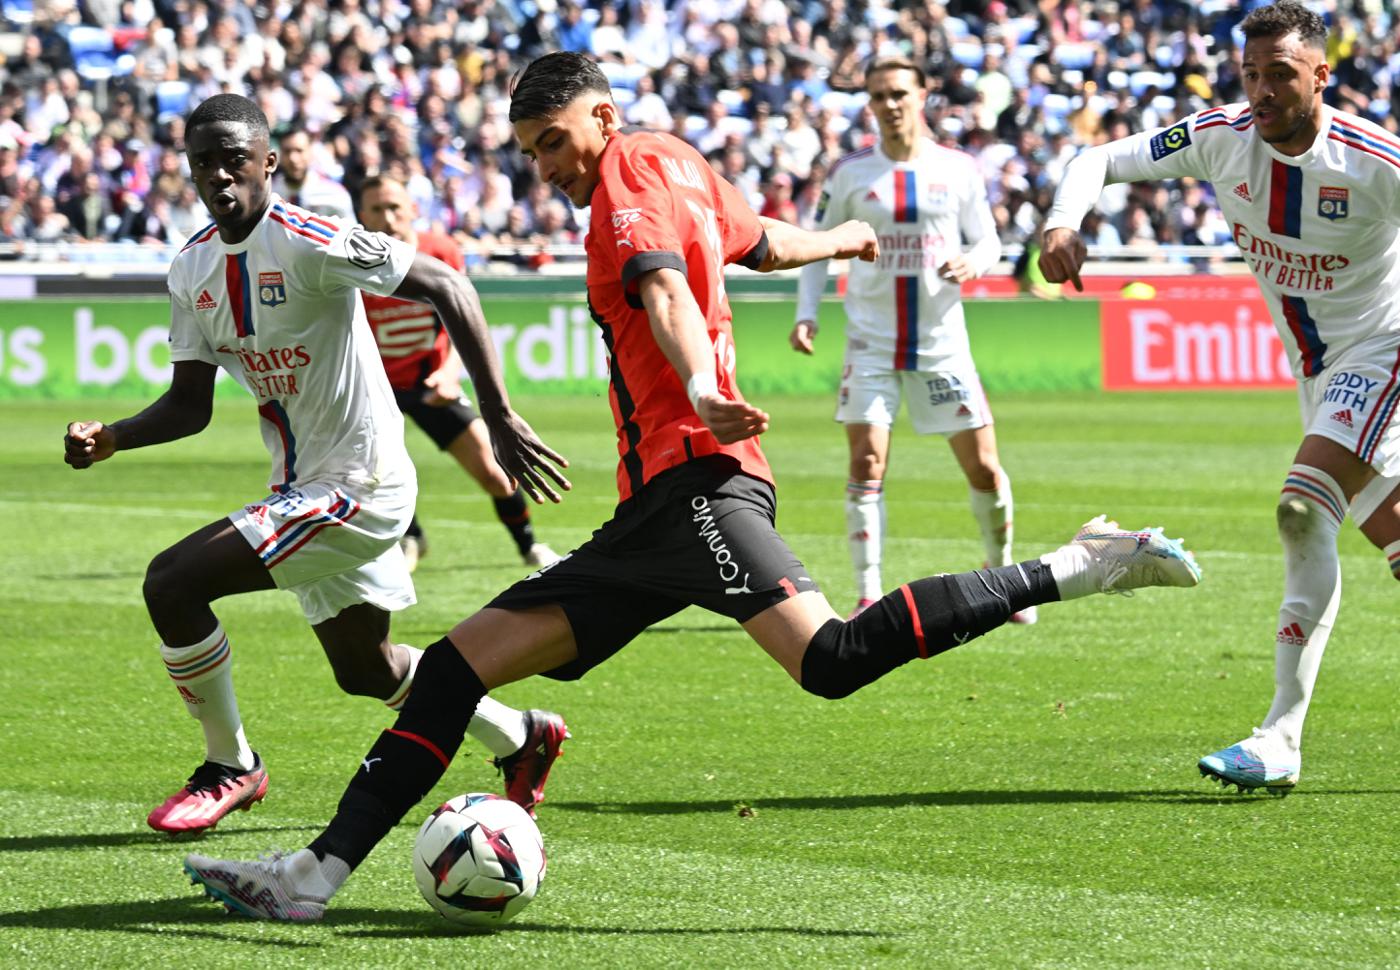 Lyon v Rennes - 3-1. Mistrzostwa Francji, runda 30. Przegląd meczu, statystyki.